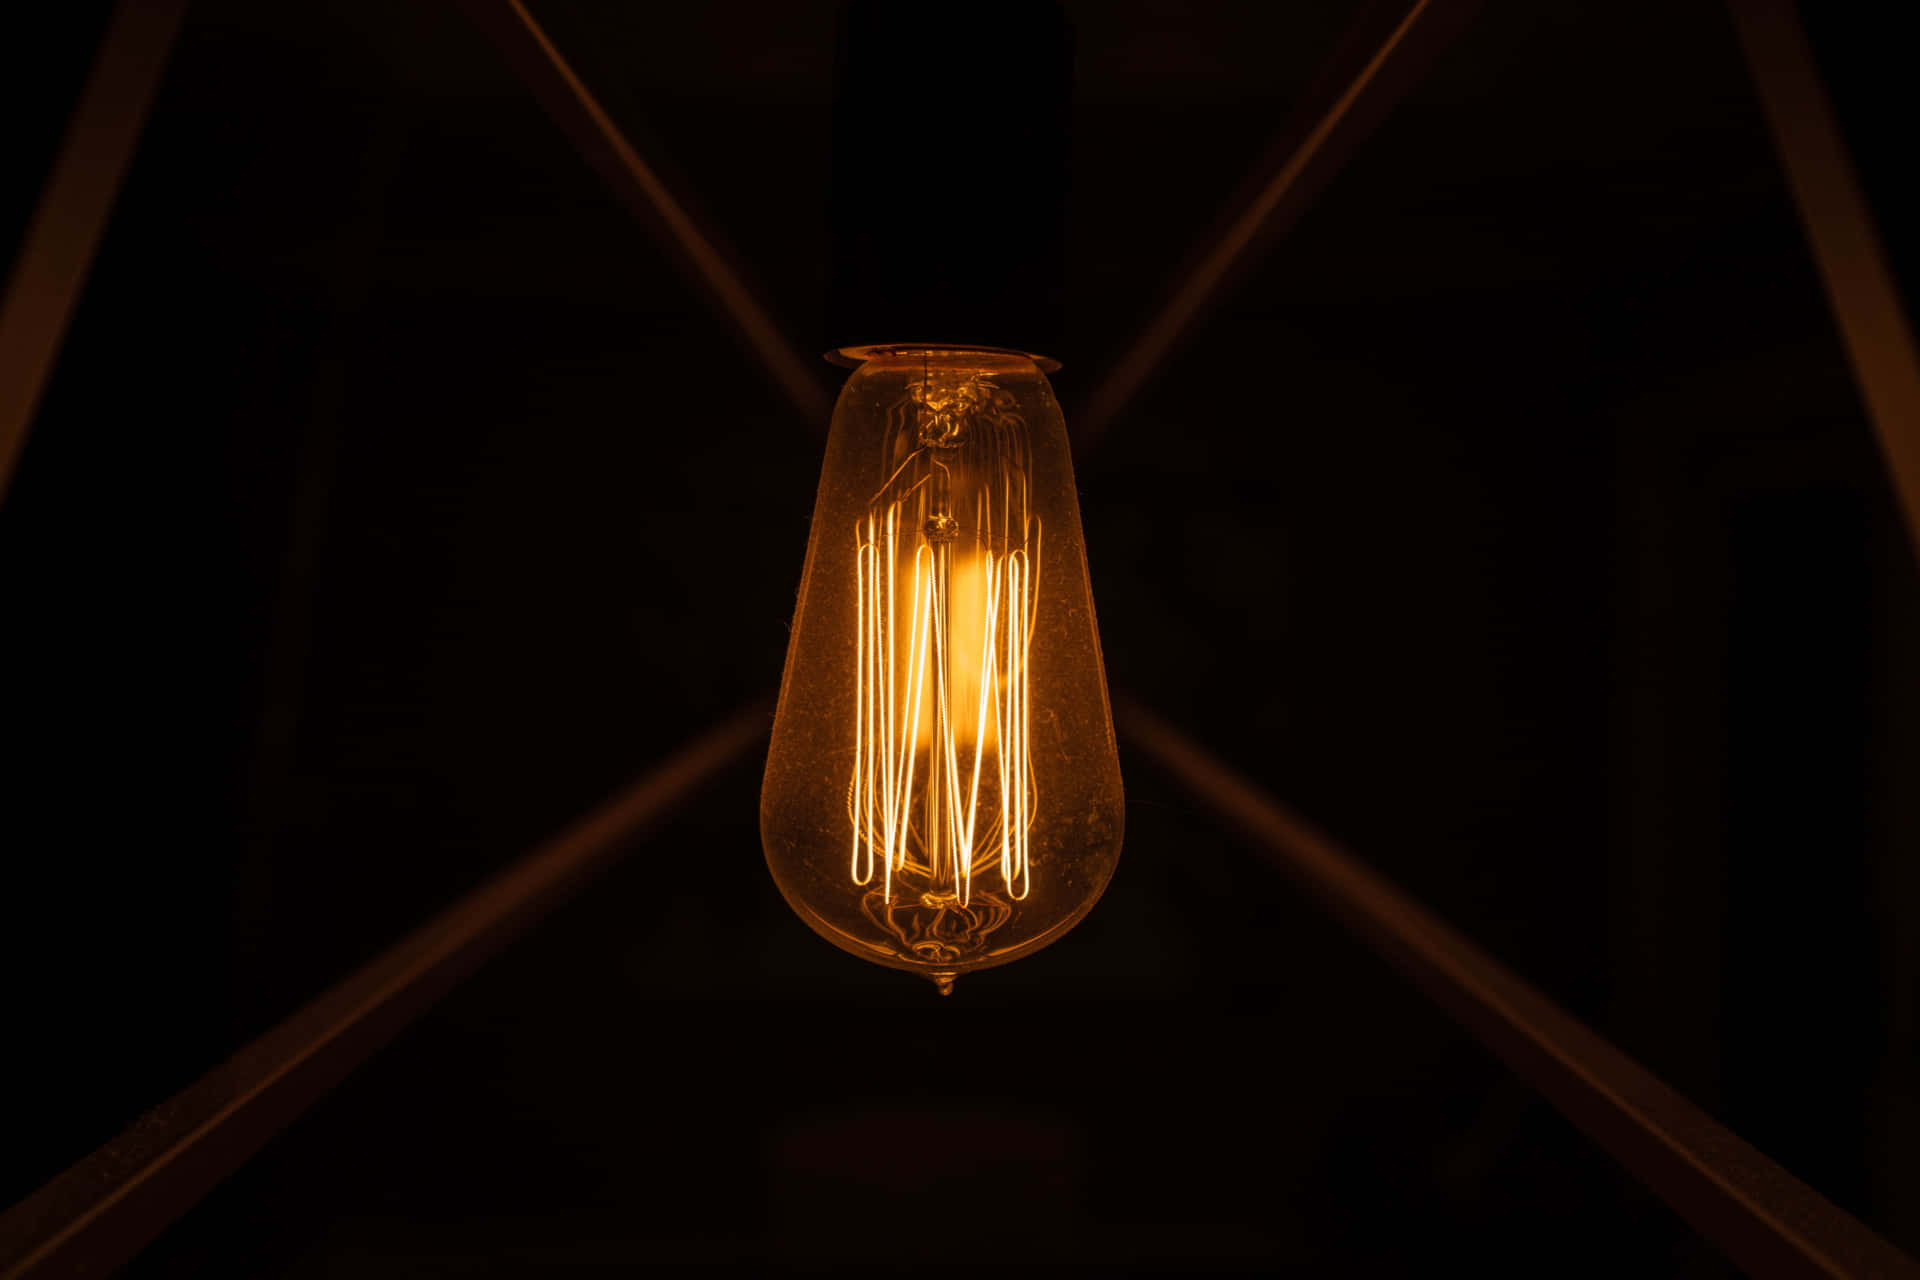 Light Bulb Background